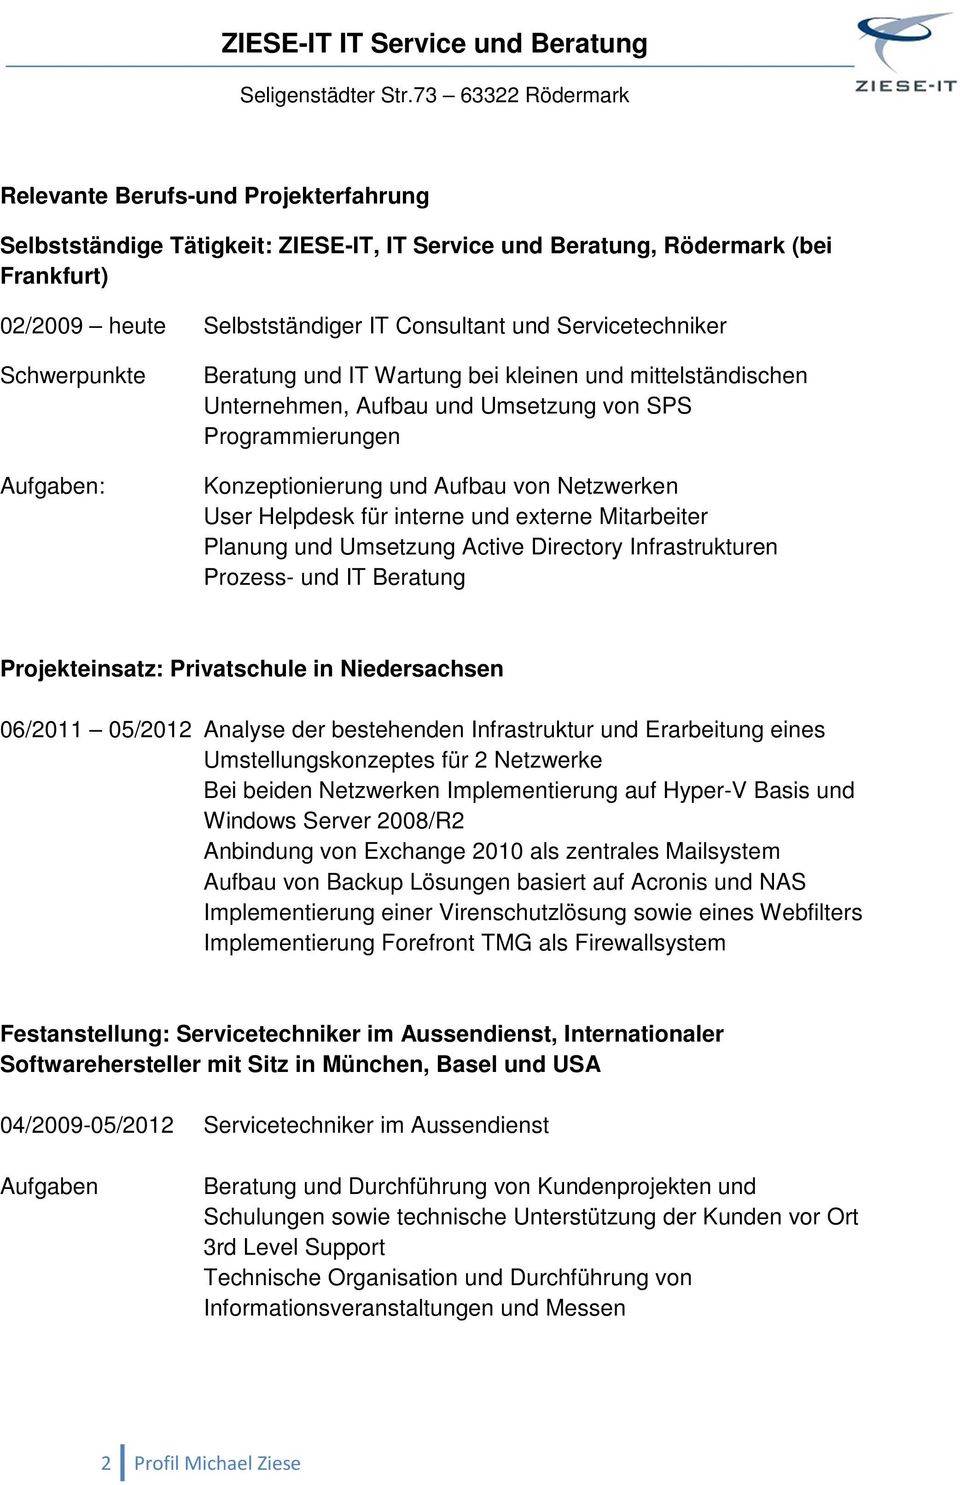 interne und externe Mitarbeiter Planung und Umsetzung Active Directory Infrastrukturen Prozess- und IT Beratung Projekteinsatz: Privatschule in Niedersachsen 06/2011 05/2012 Analyse der bestehenden